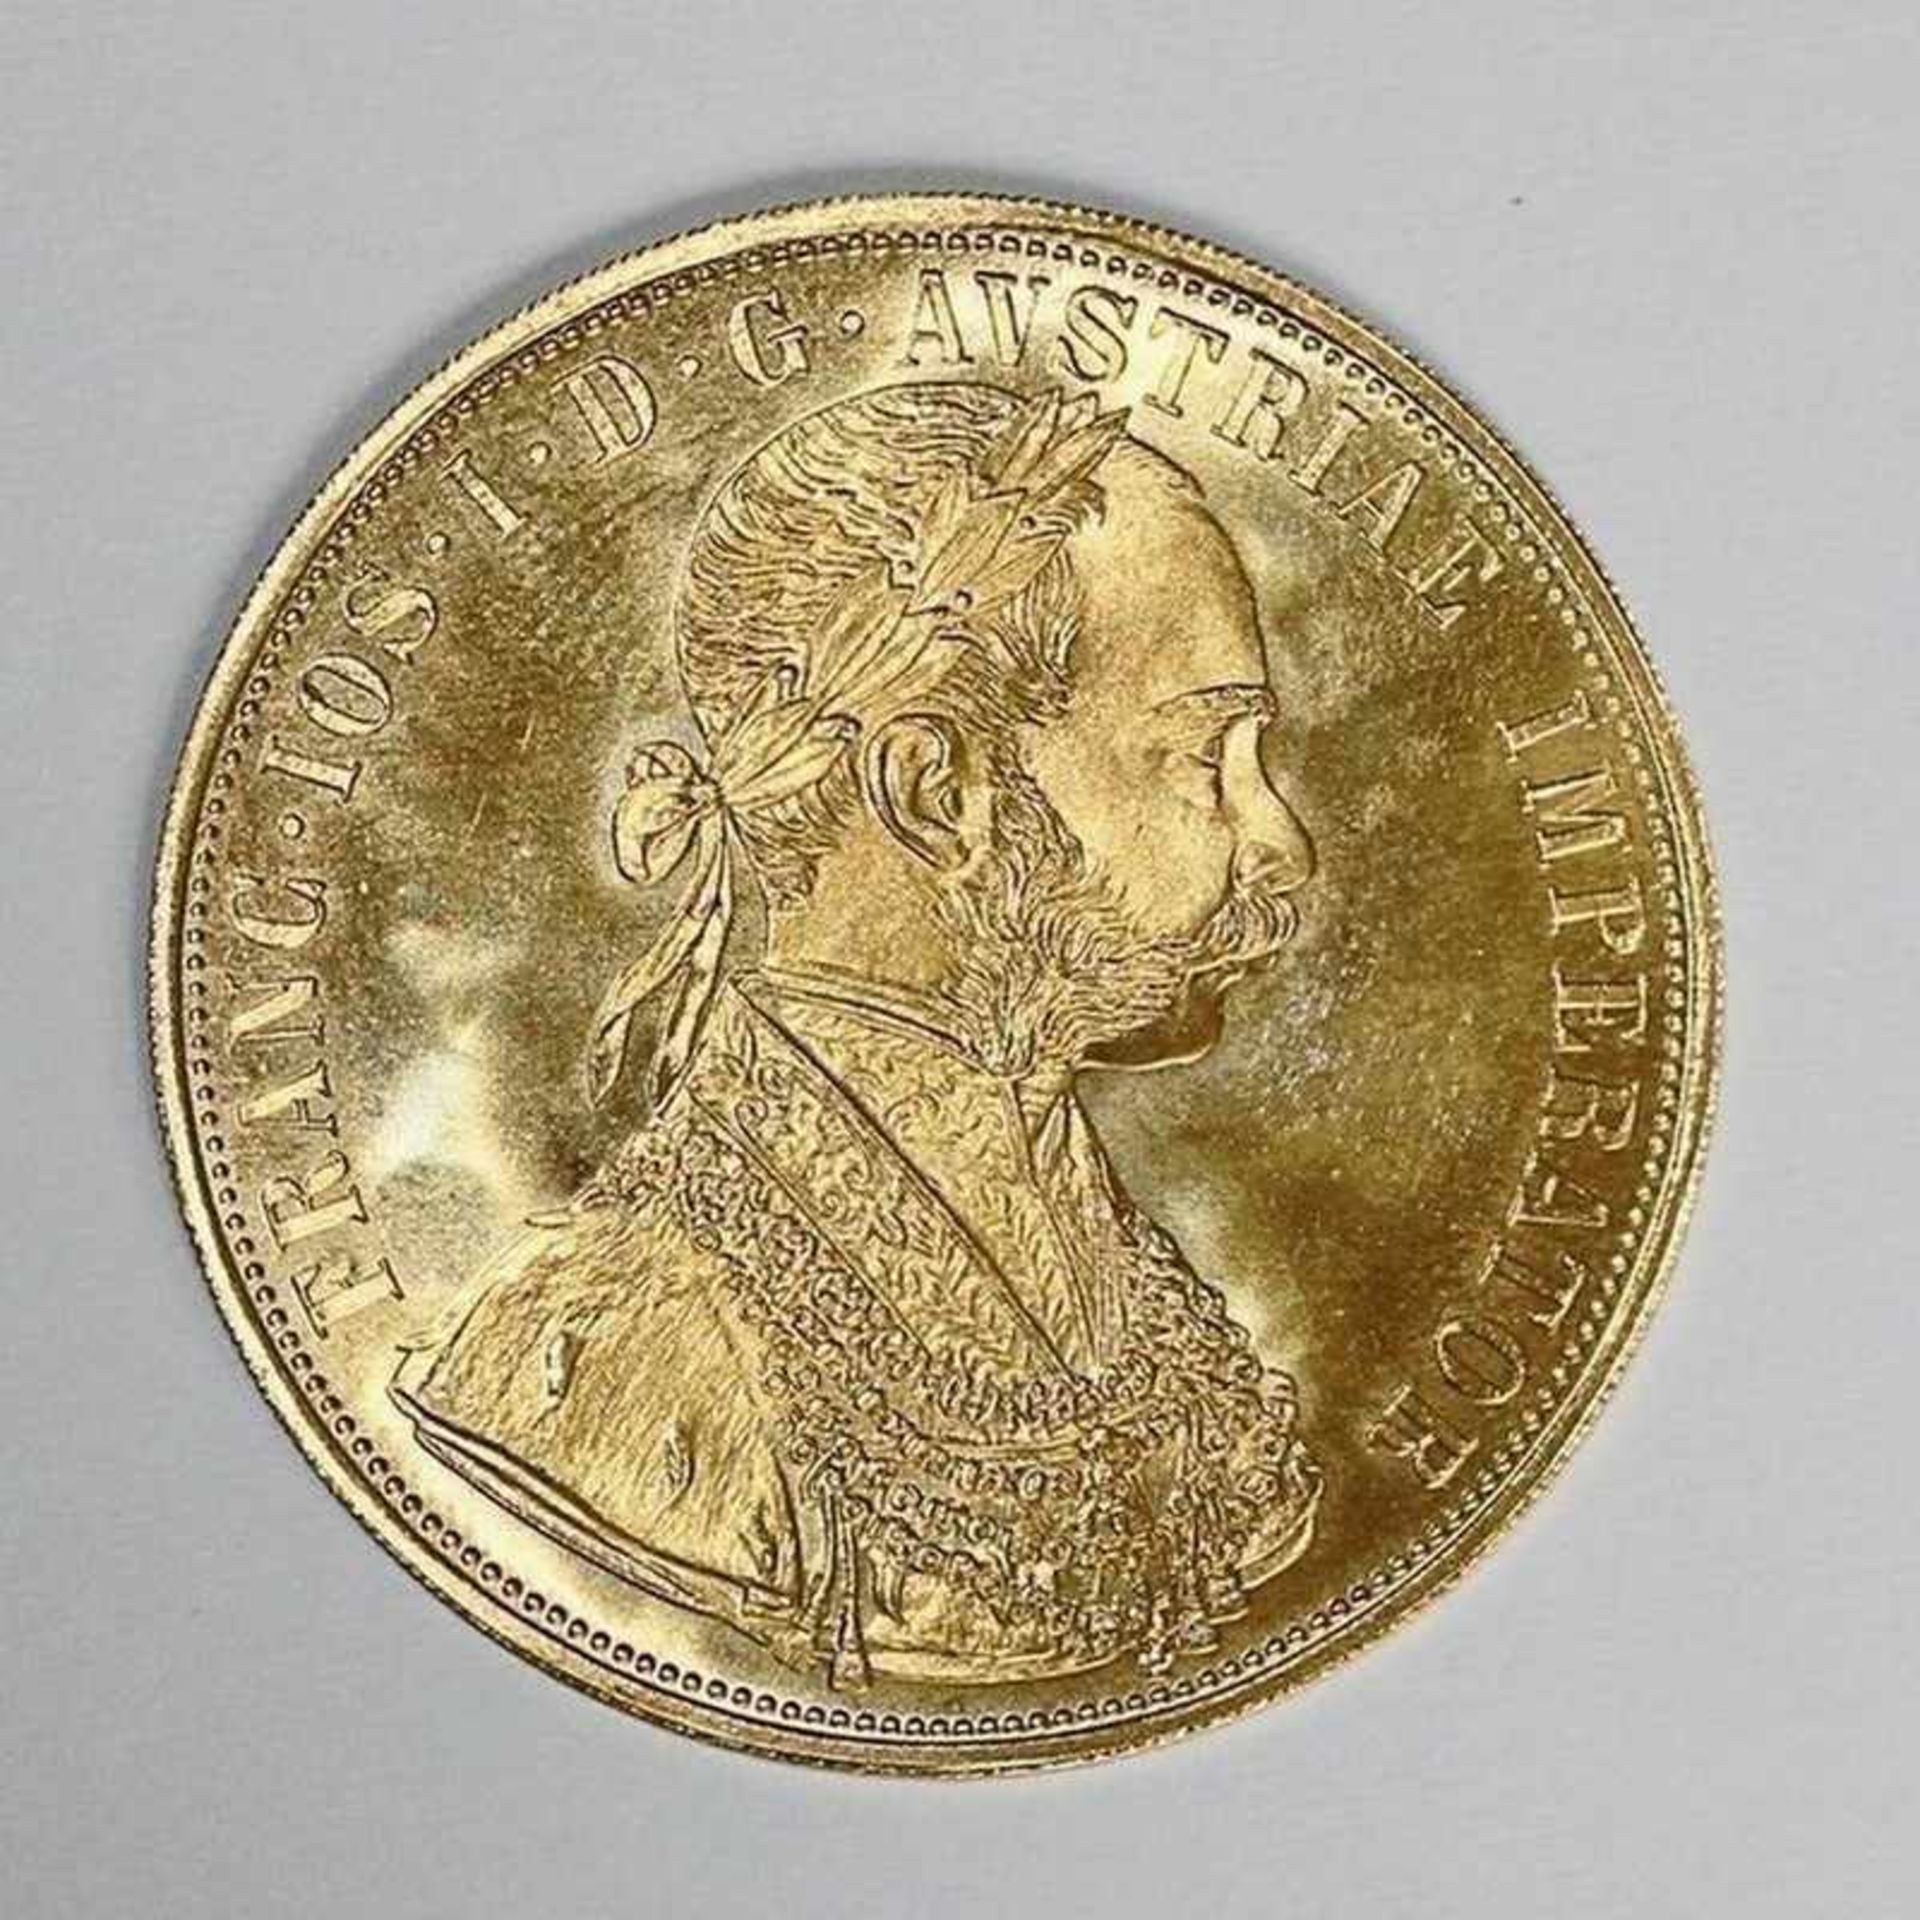 Gold - Österreich 4 Dukaten 1915 Kaiser Franz Joseph, NP, D 39mm, G 13,9g, stgl.